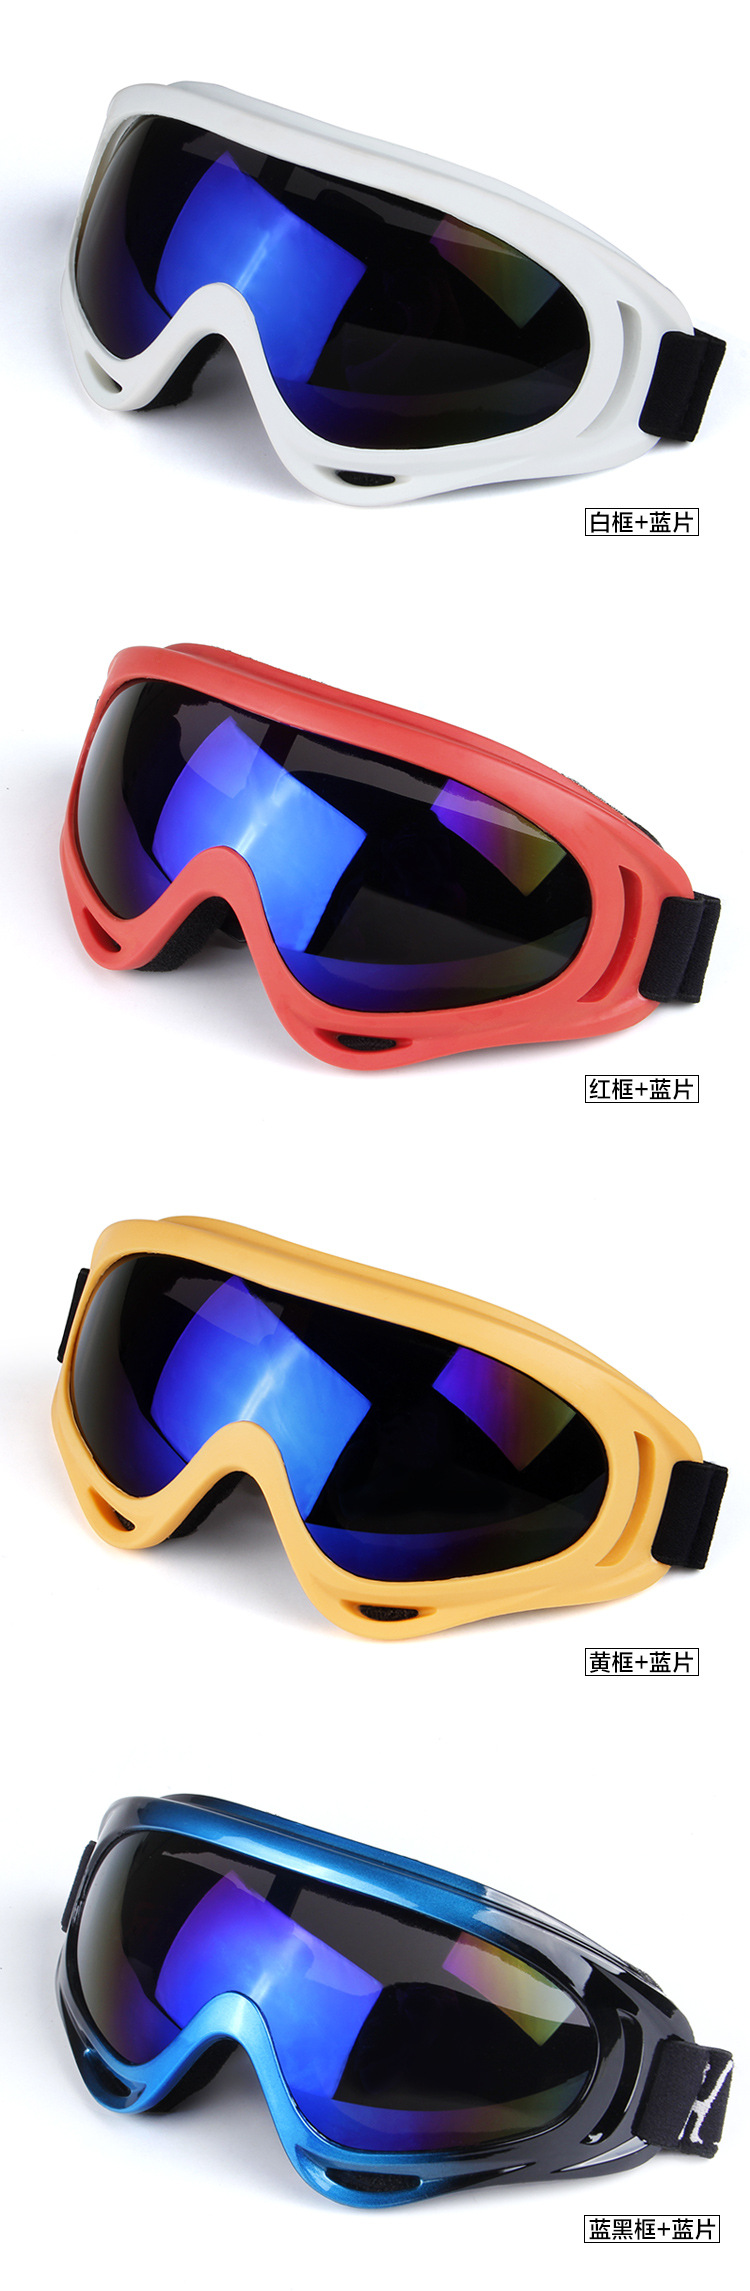 厂家直销 X400 彩色摩托车风镜 户外骑行眼镜 越野护目镜 滑雪镜示例图5